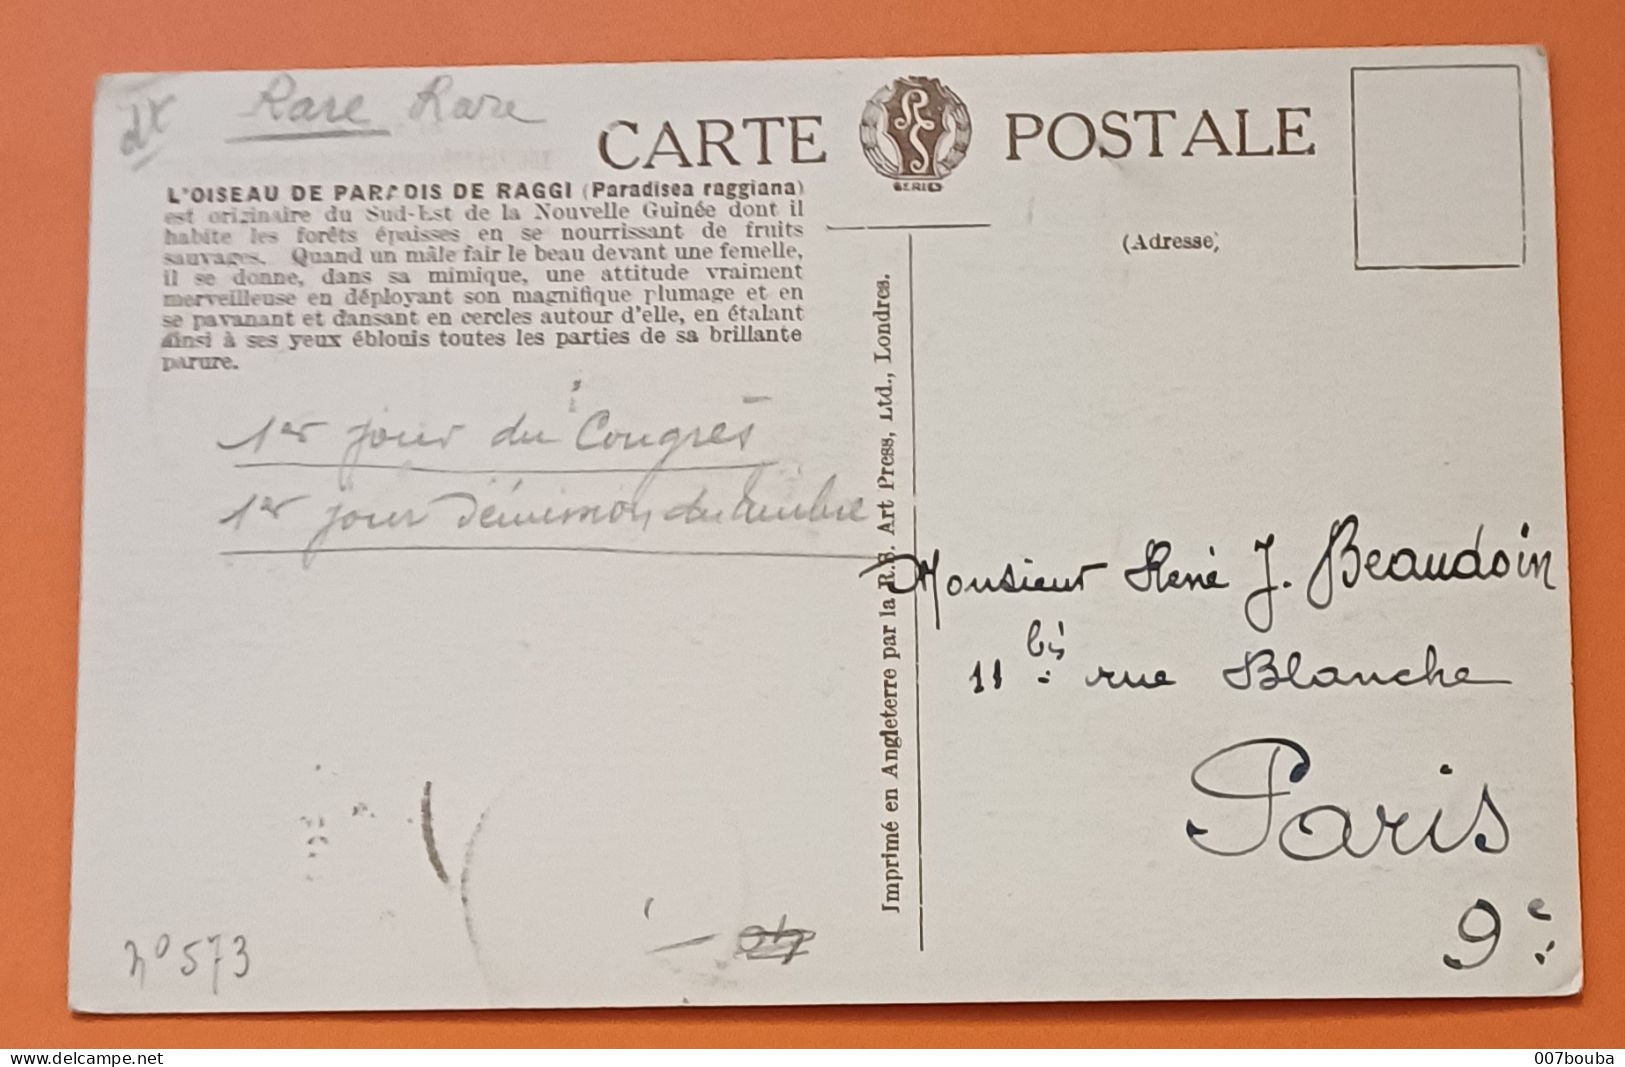 FRANCE  / OBLITÉRATION 1er JOUR CONGRÈS INTL ORNITHOLOGIQUE DE ROUEN 1938 / TP 380 / L'OISEAU DU PARADIS - Mechanical Postmarks (Advertisement)